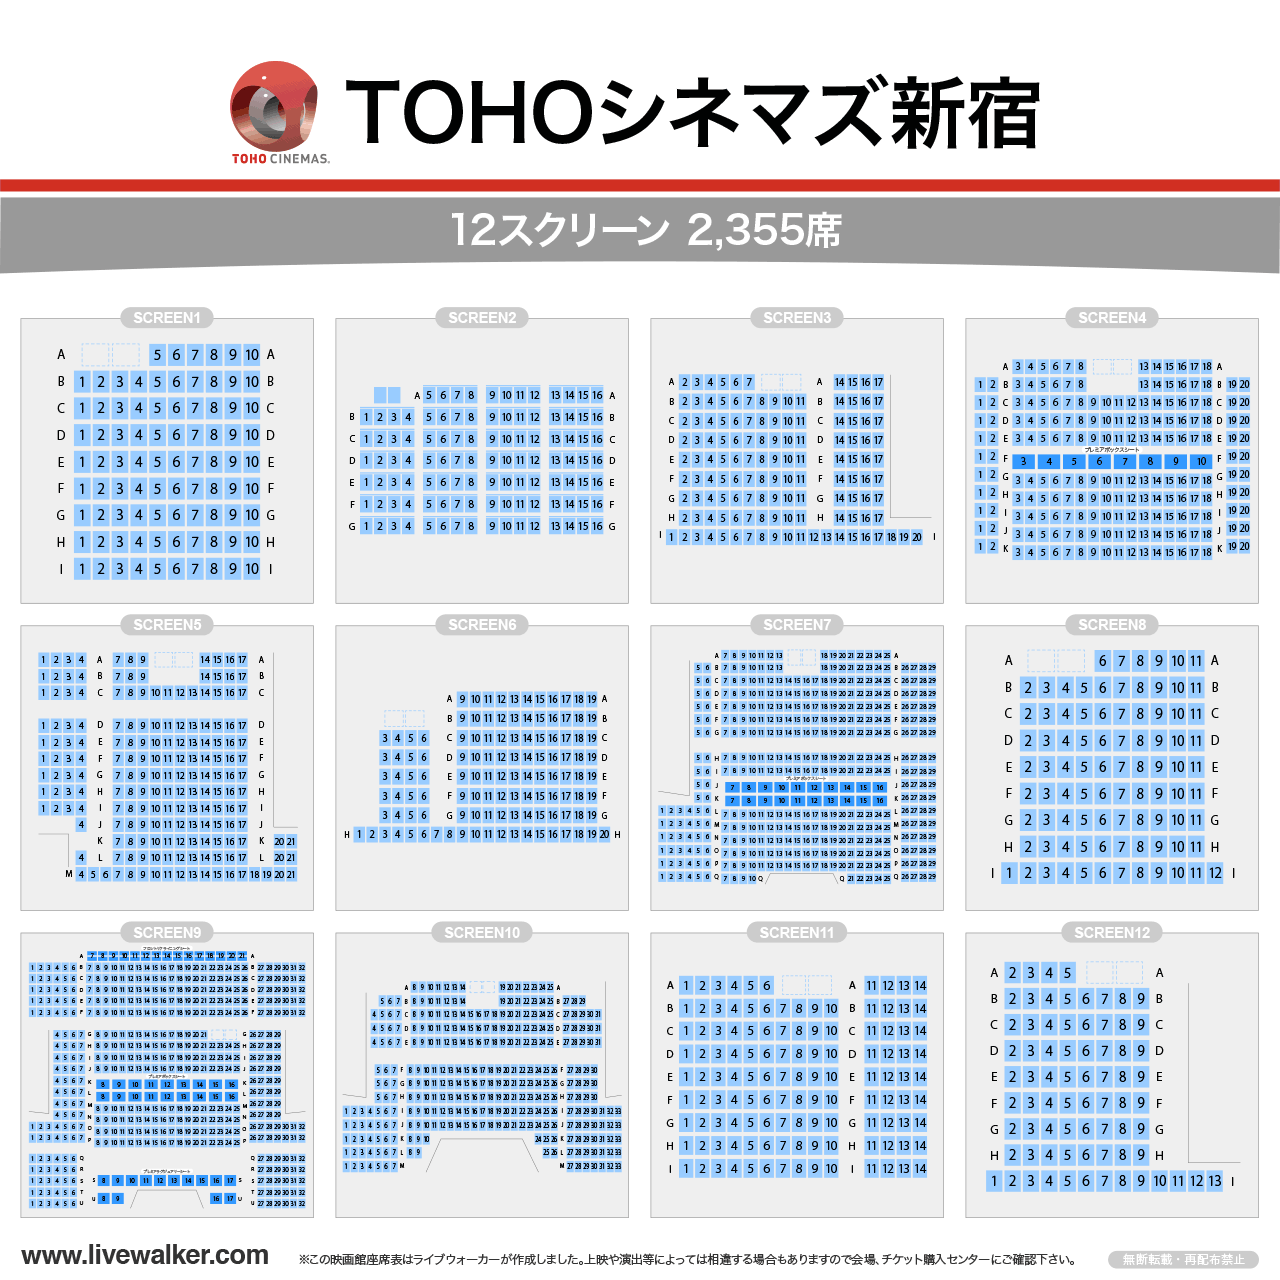 TOHOシネマズ新宿スクリーンの座席表